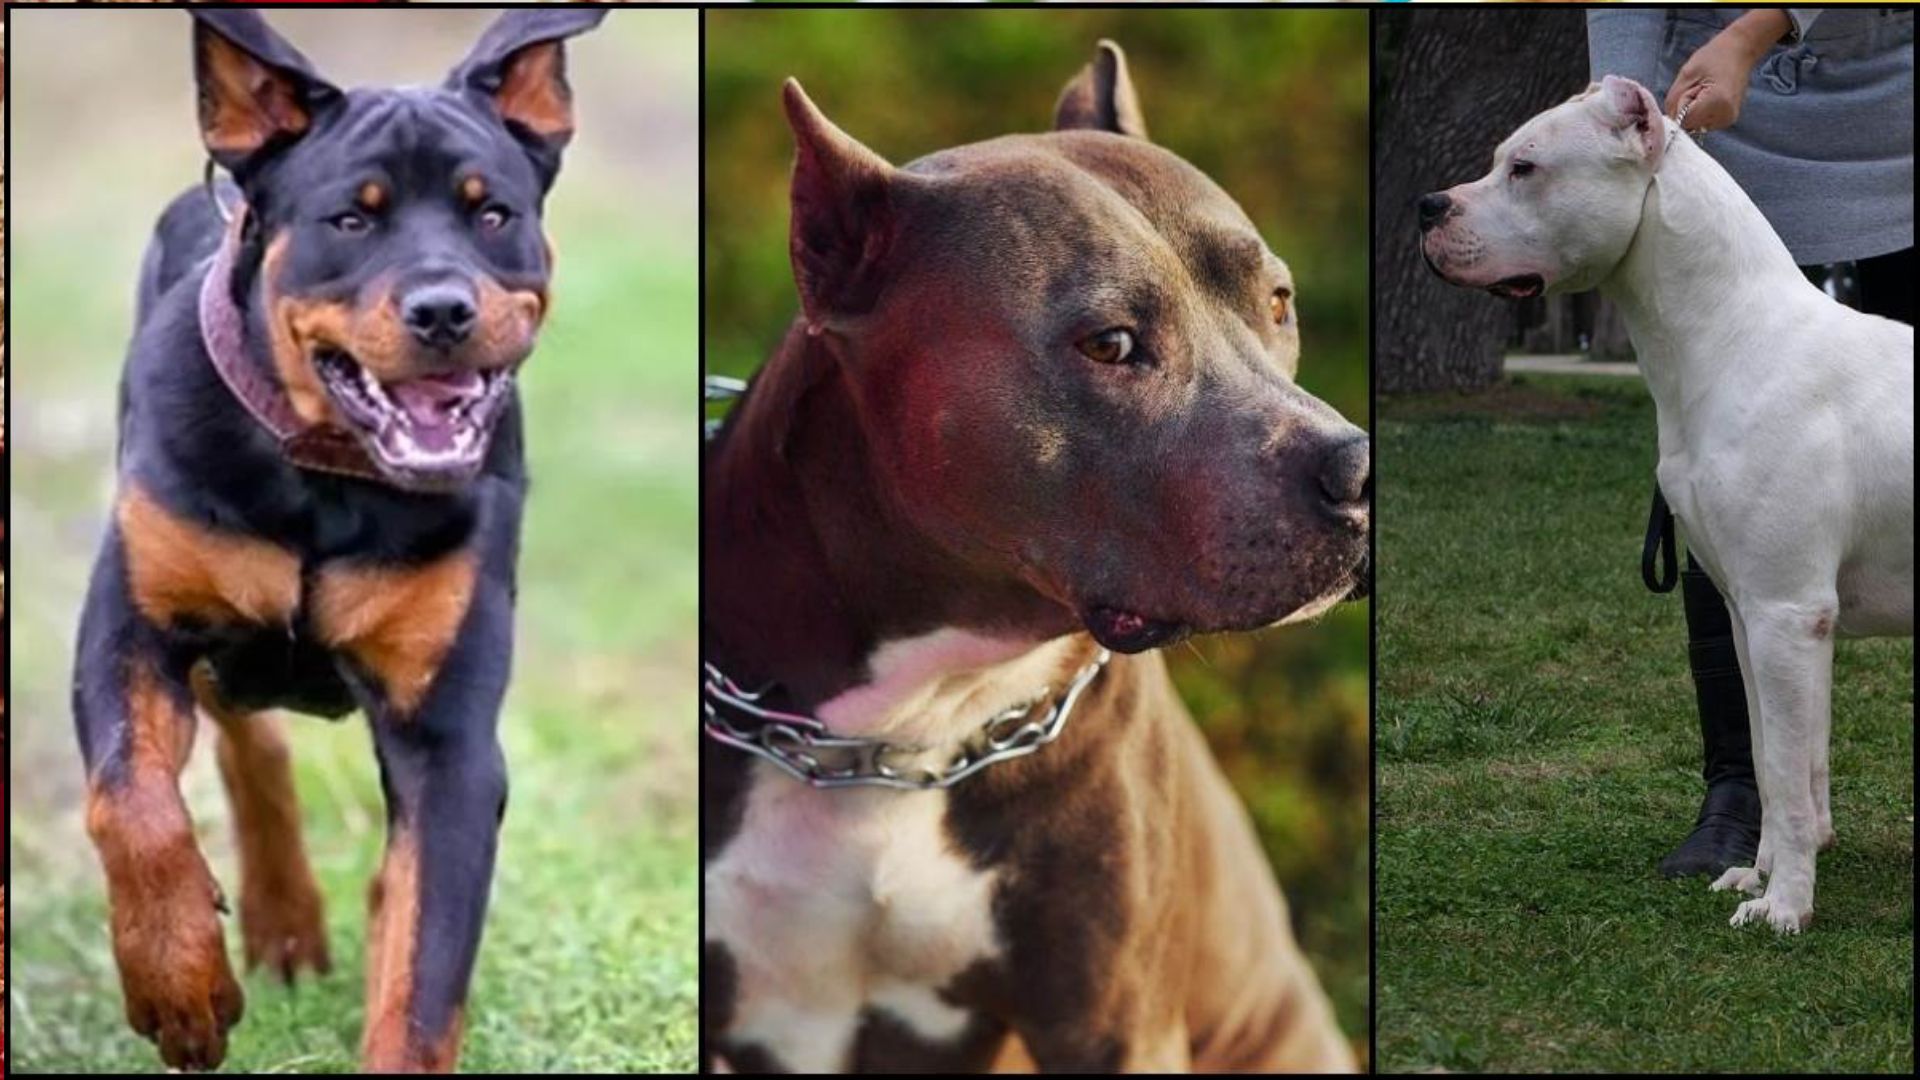 कहीं आपके पास भी तो नहीं है इस नस्ल के DOG, केंद्र ने आक्रामक कुत्तों की 23 नस्लों पर लगाया प्रतिबंध